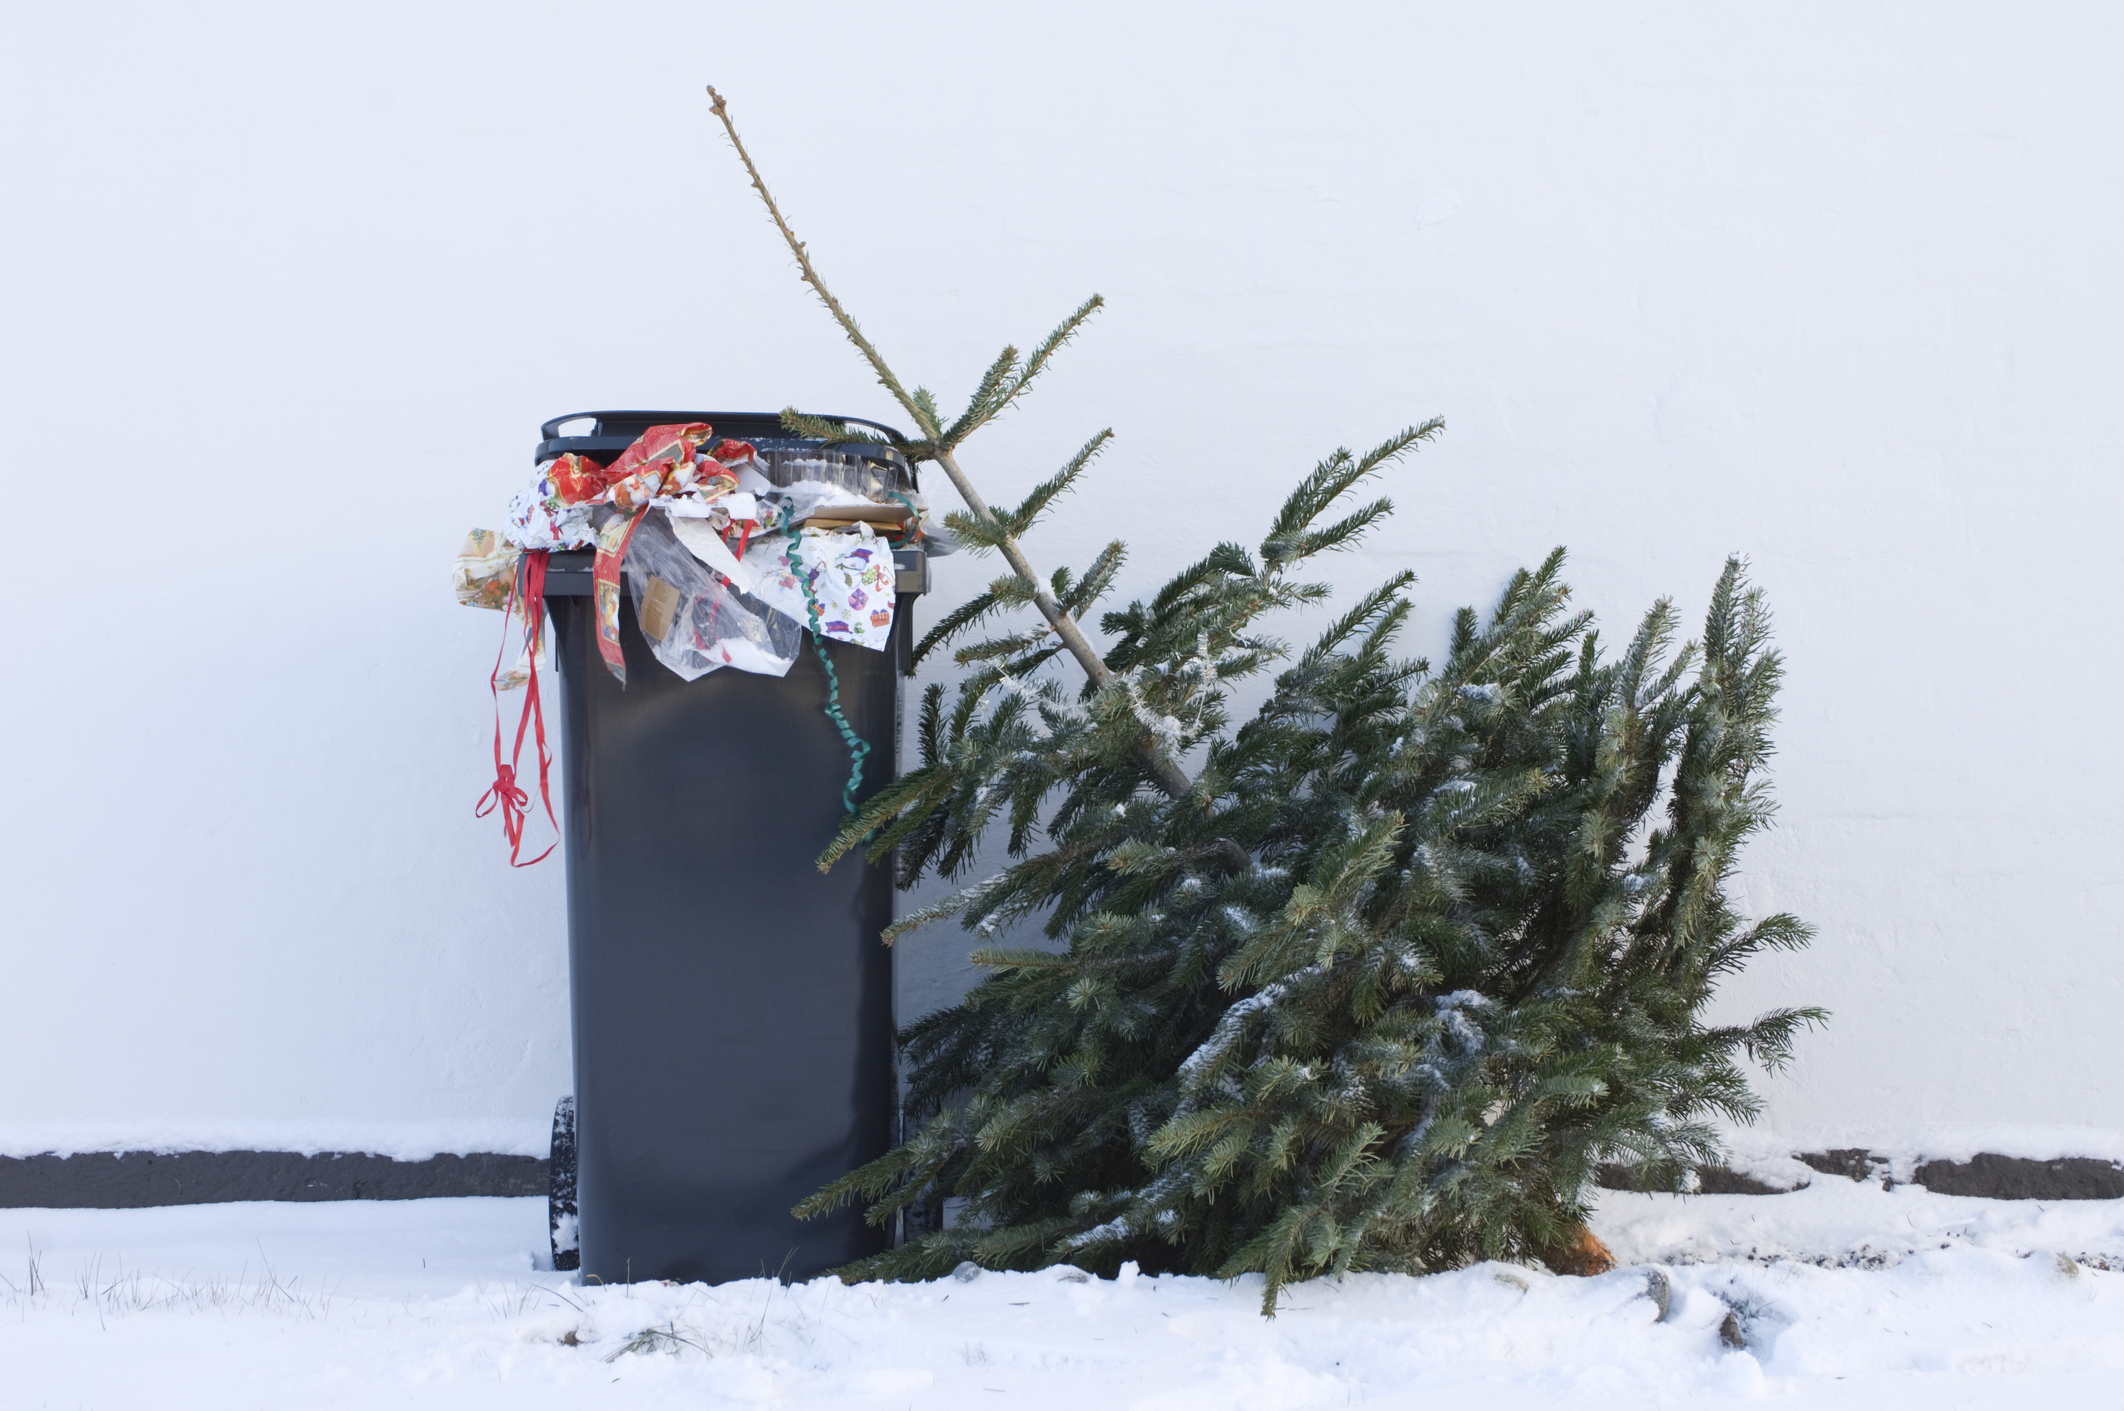 Voller Mistkübel mit Müll von Weihnachten, daneben ein weggeworfener Christbaum